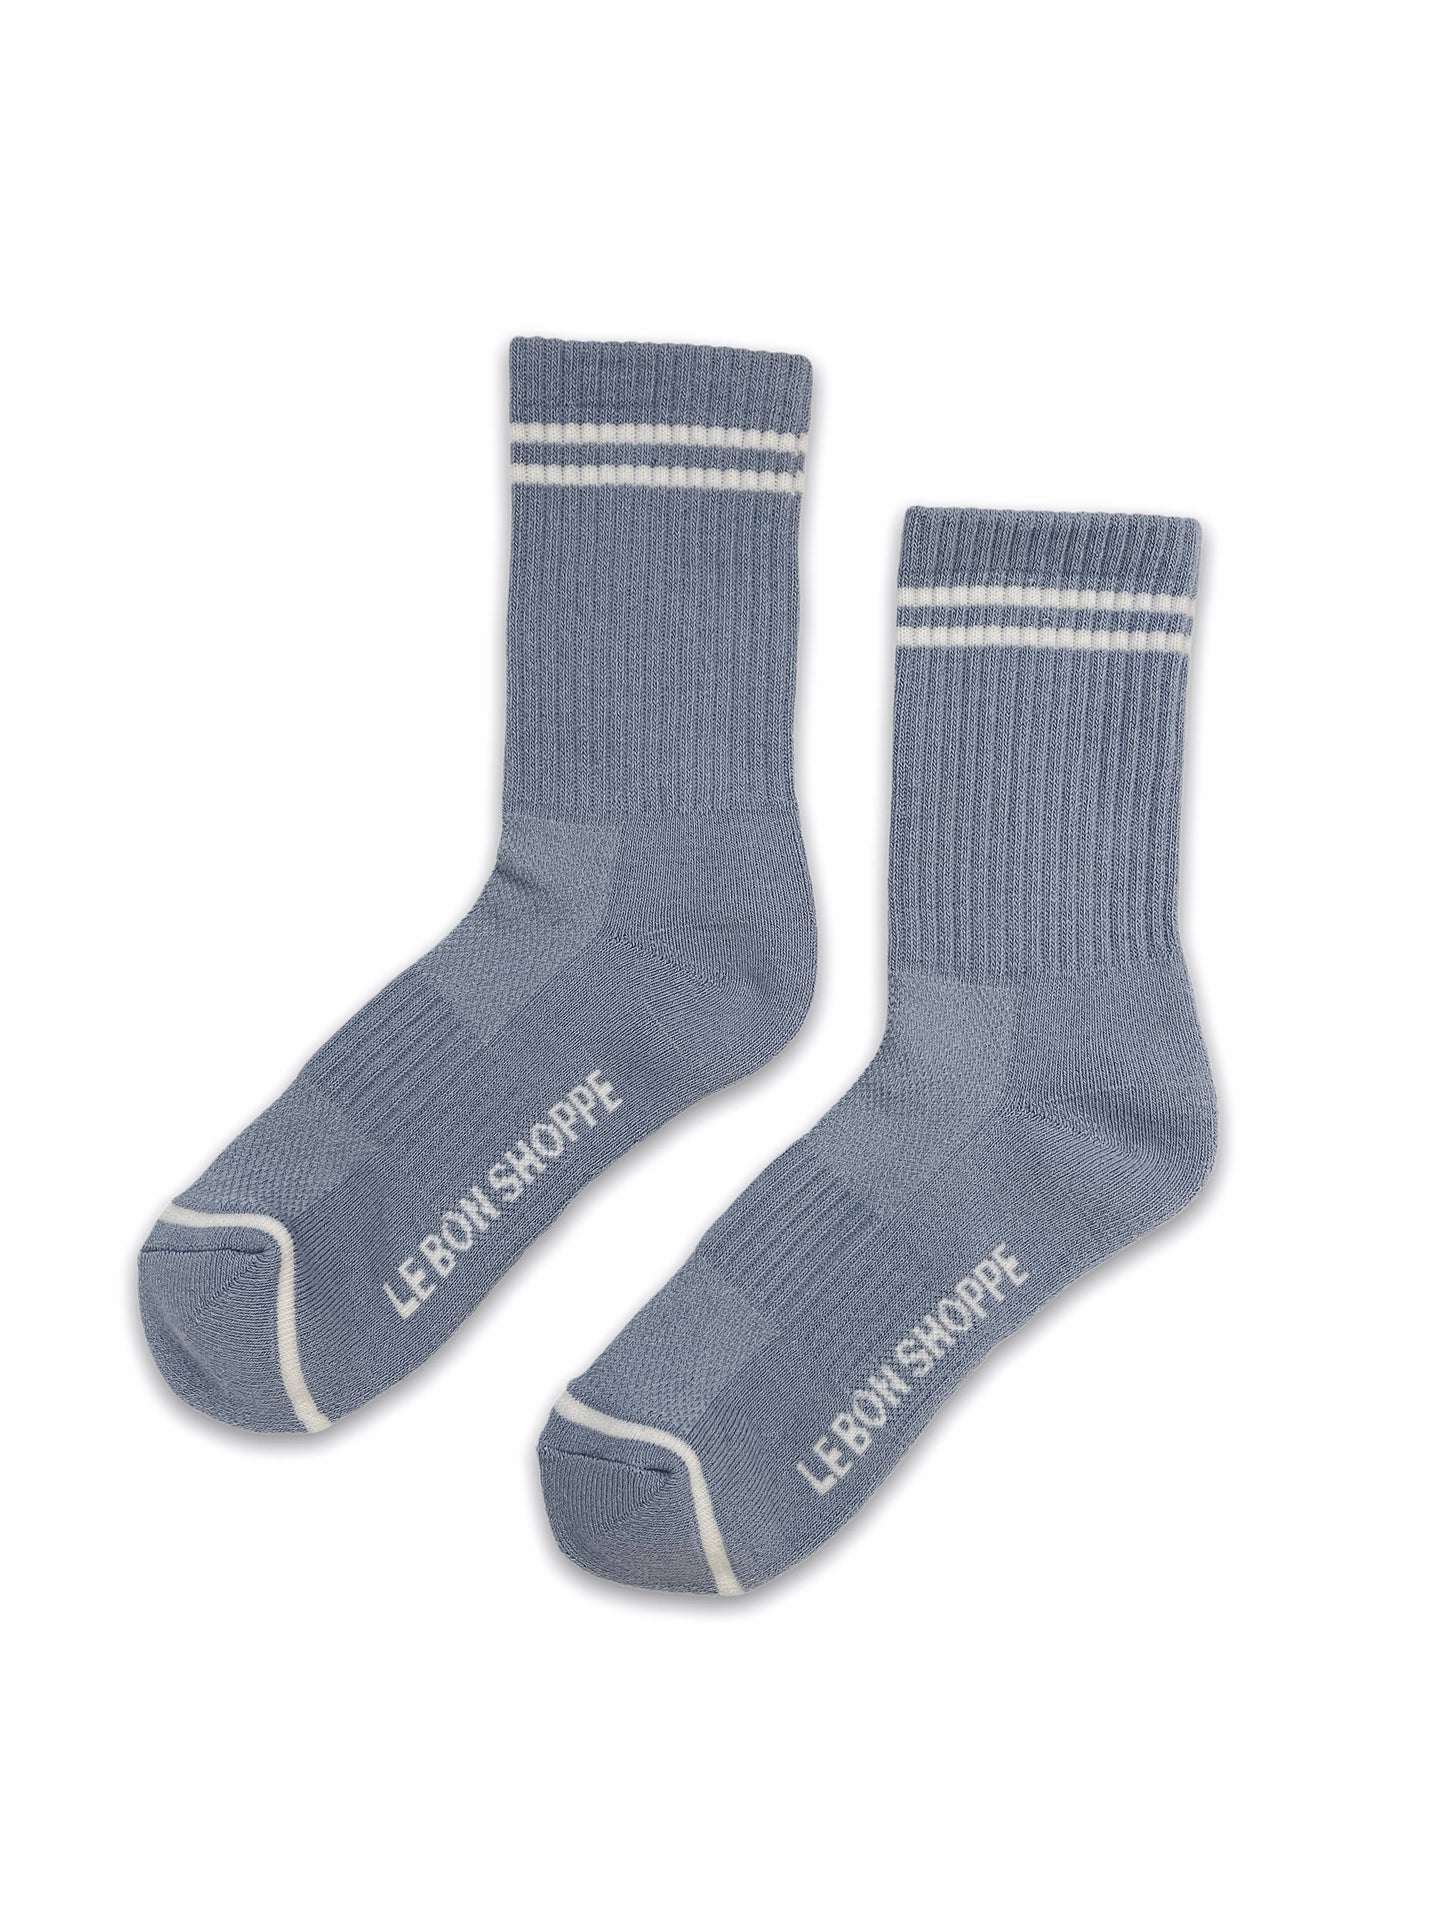 Le Bon Shoppe - Boyfriend Socks: Cashew